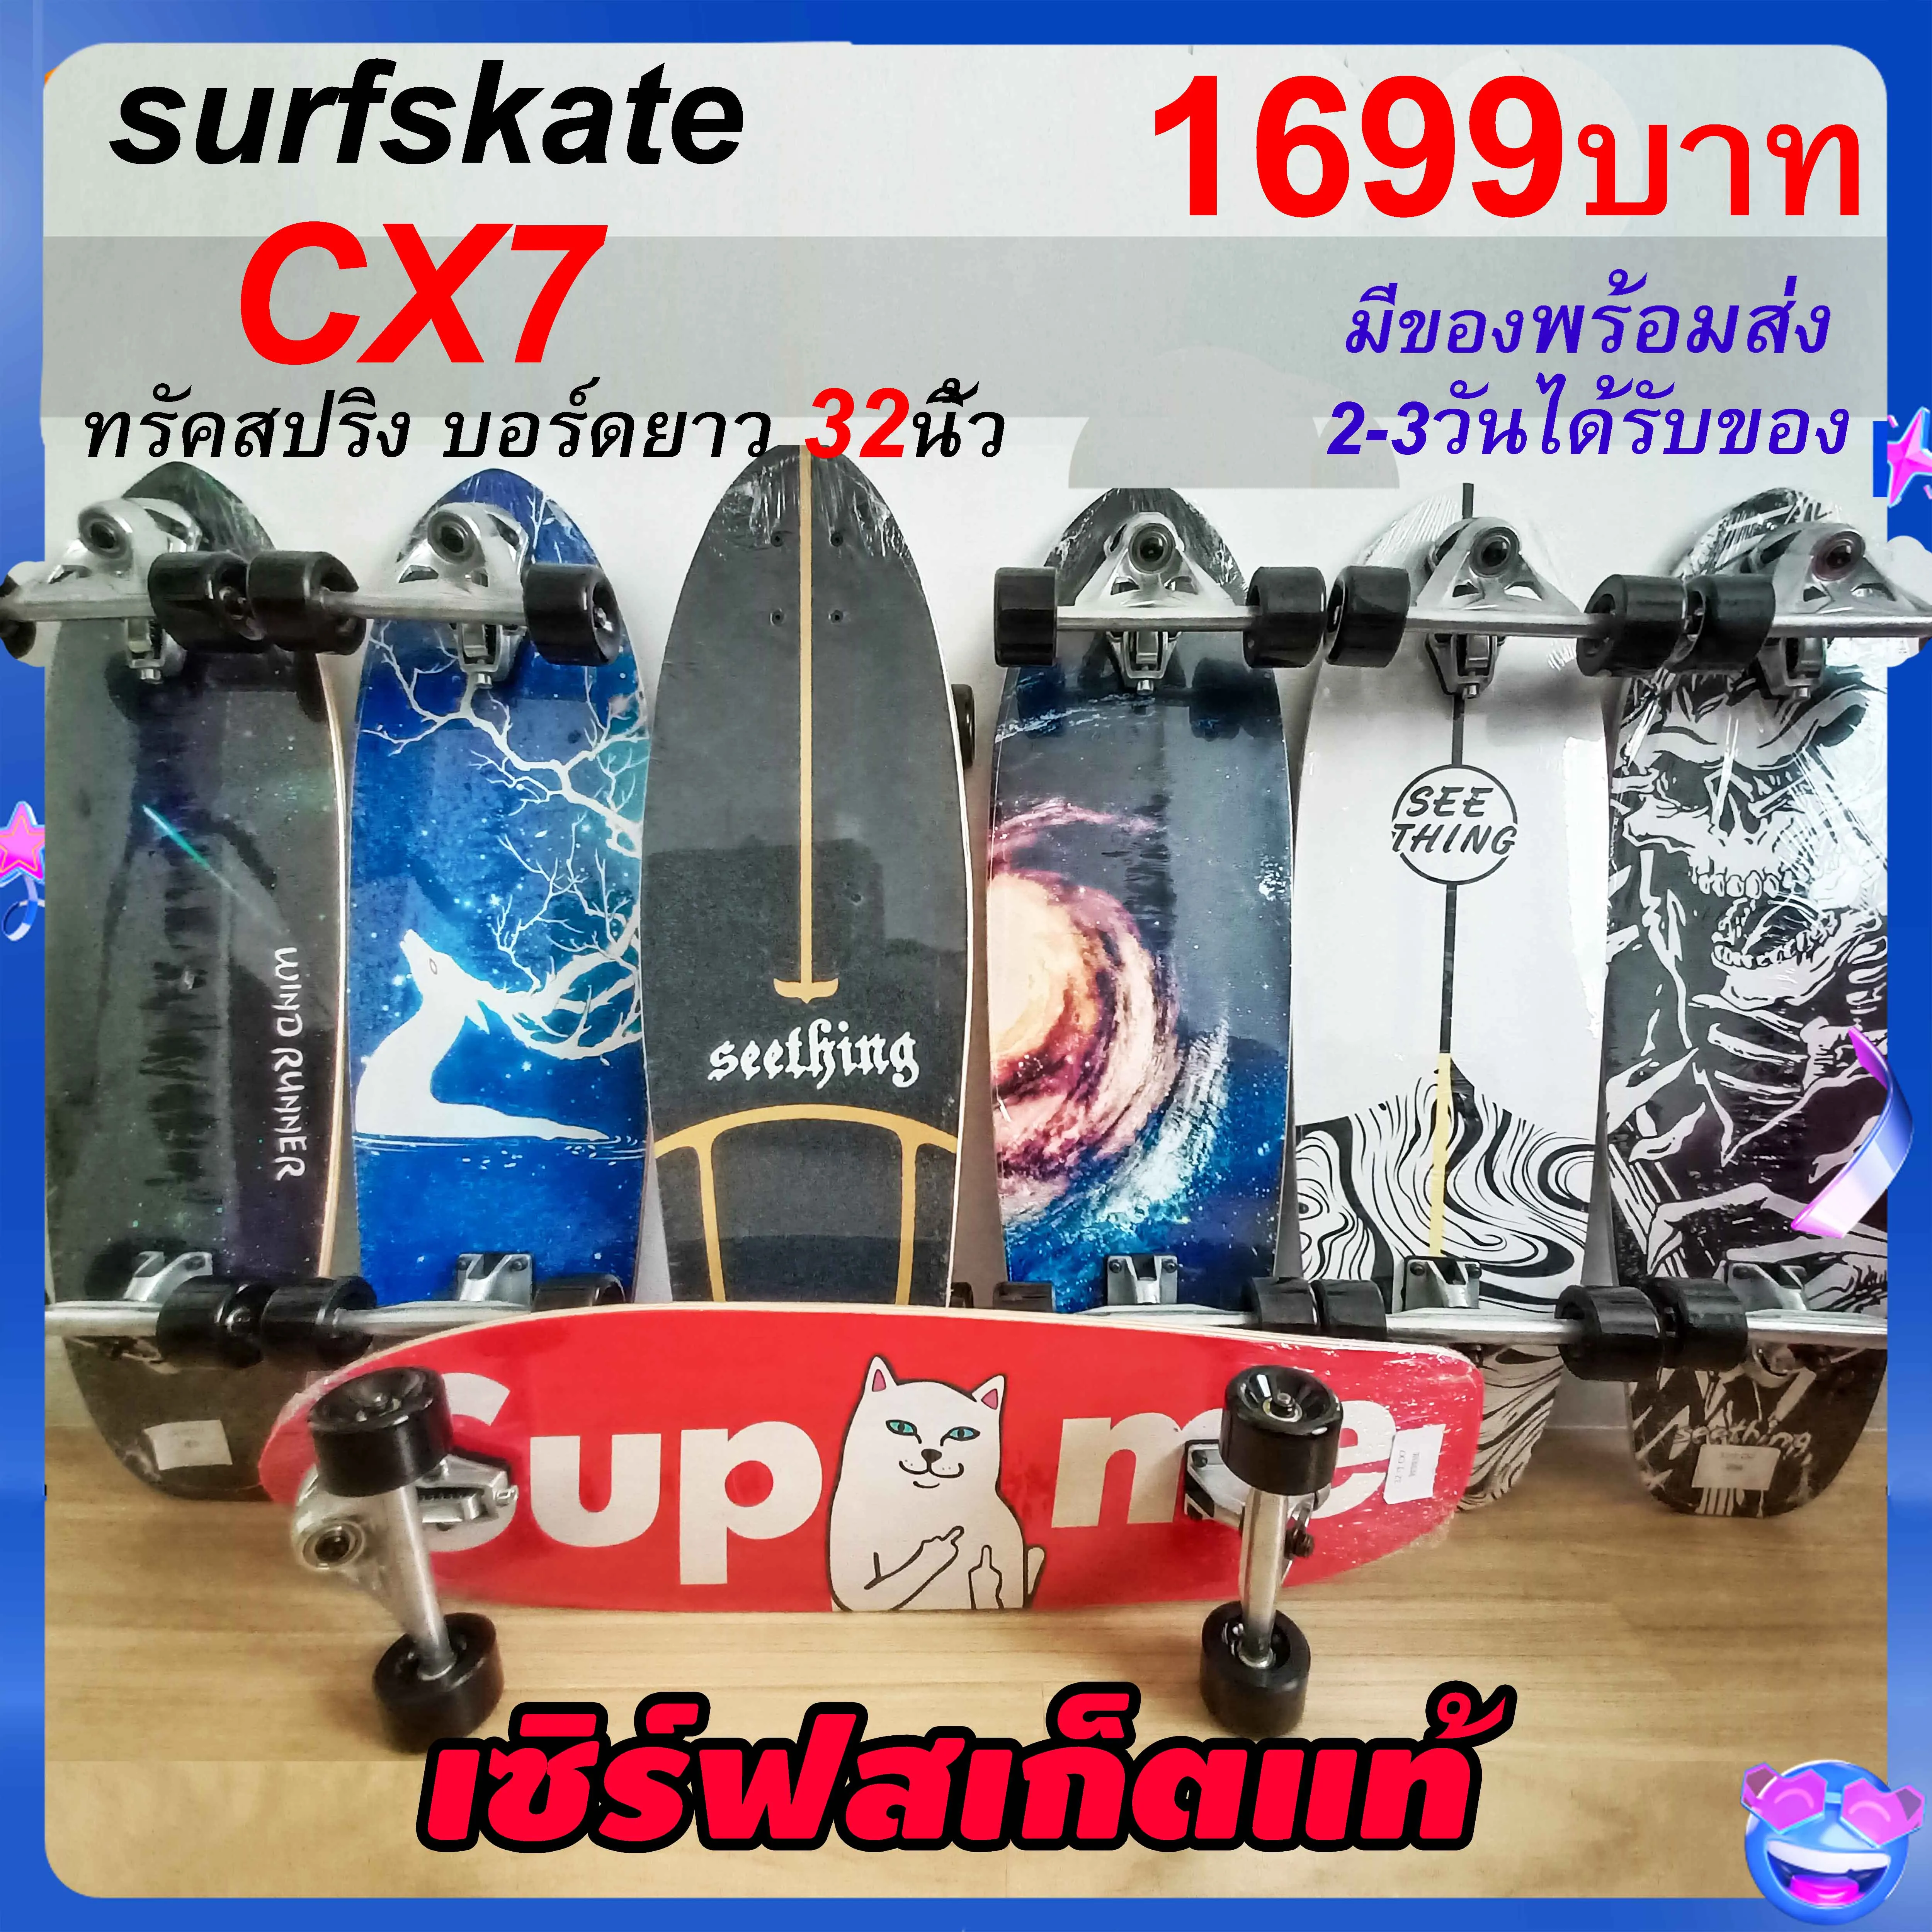 เซิร์ฟสเก็ต surfskate CX7 ขนาด32นิ้ว เซิร์ฟสเก็ตรุ่นใหม่ พร้อมส่งจากไทย seething surfskate toy108 เซิร์ฟสเก็ต สเก็ตบอร์ด skateboard